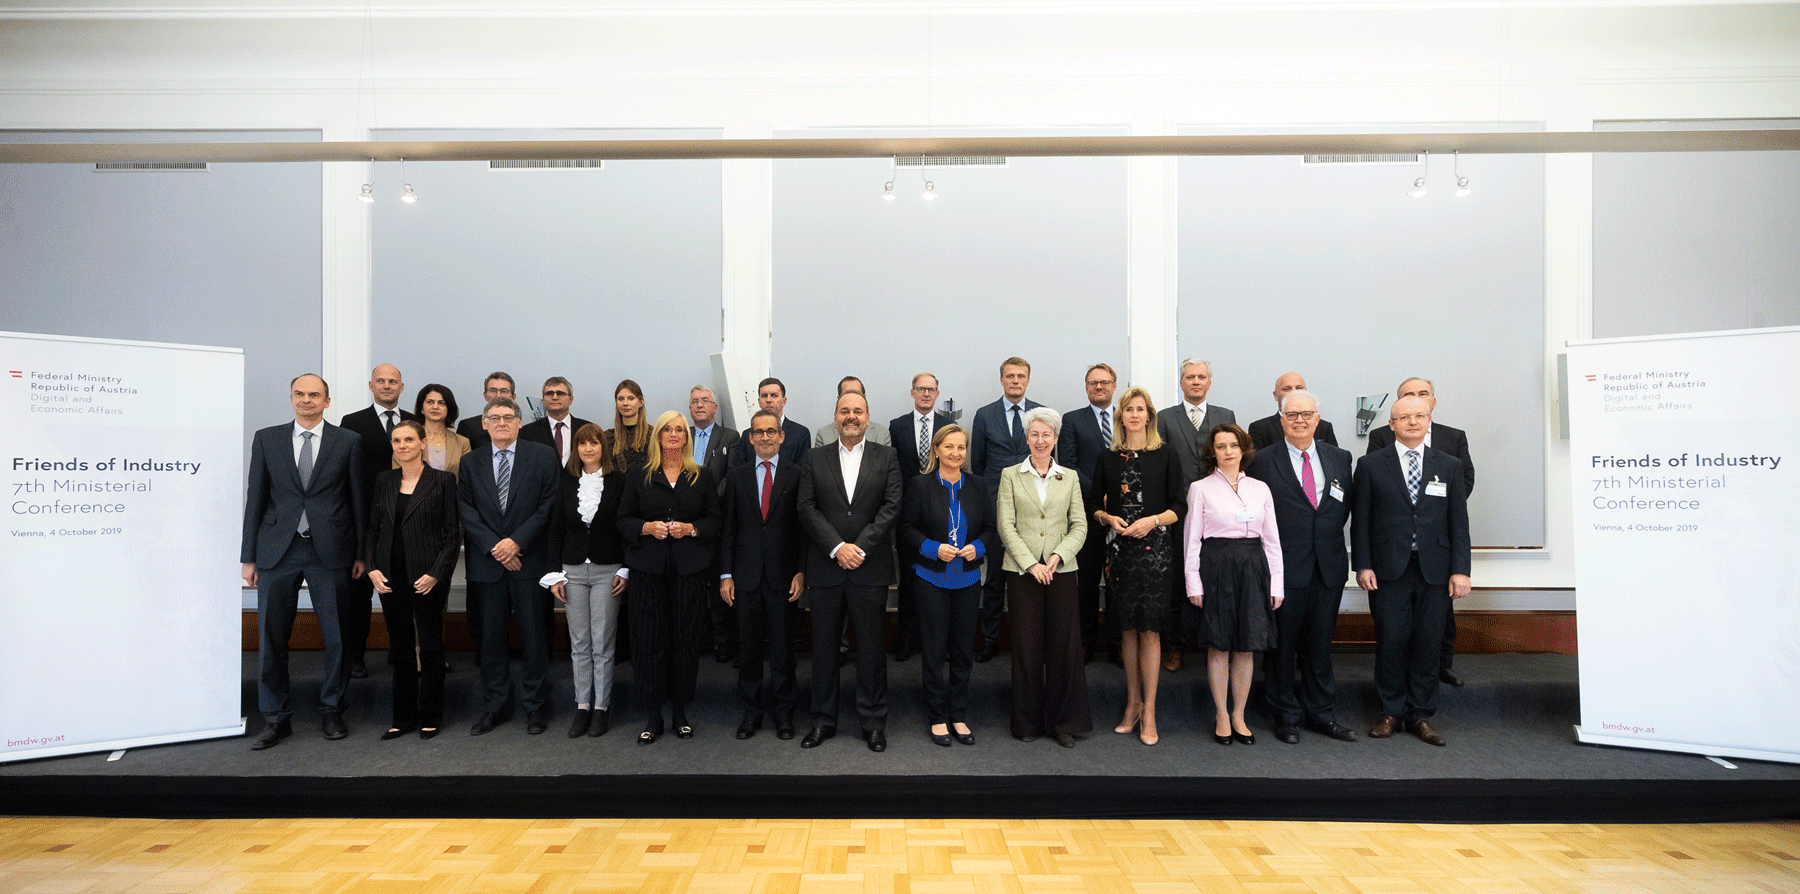 Gruppenfoto der Teilnehmerinnen und Teilnehmer an der "Friends of Industry"- Ministerkonferenz